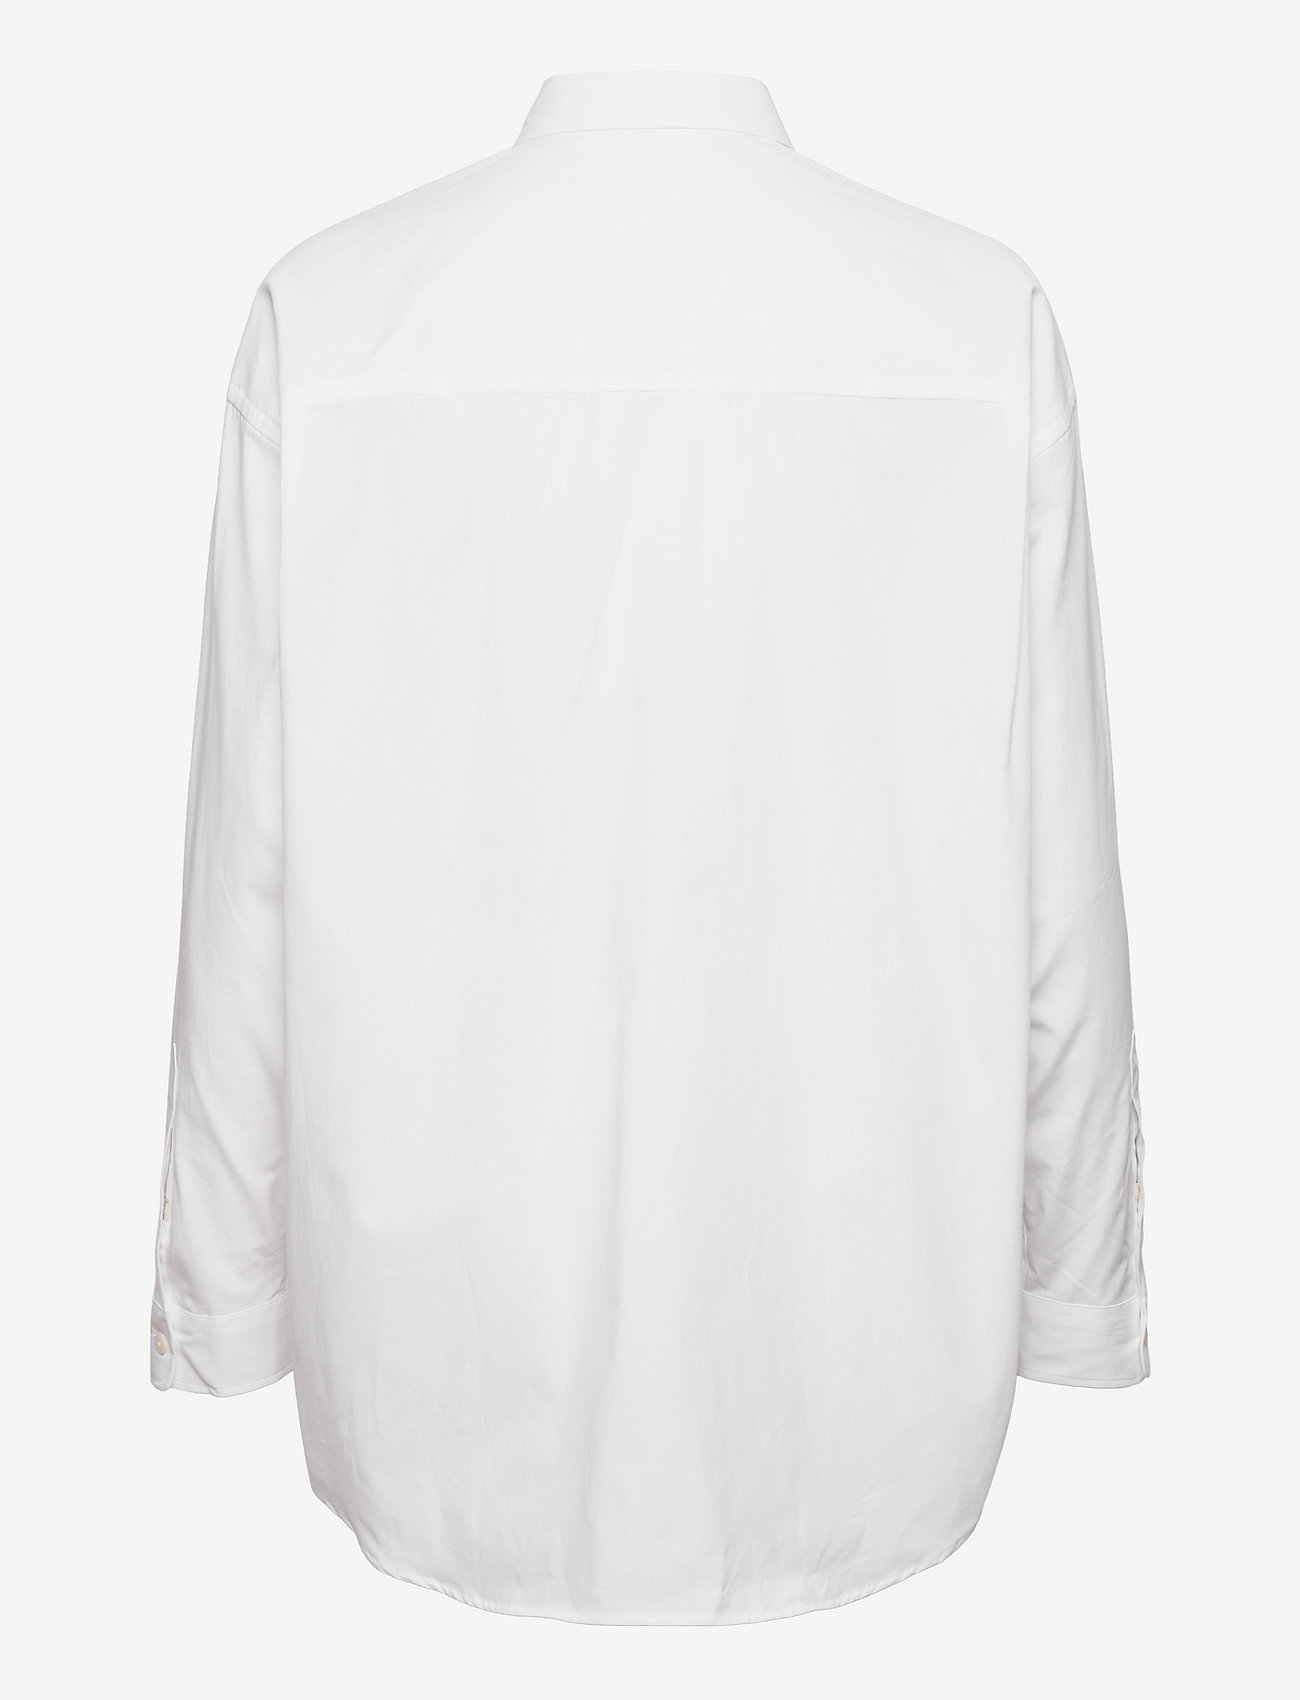 Luana shirt in white